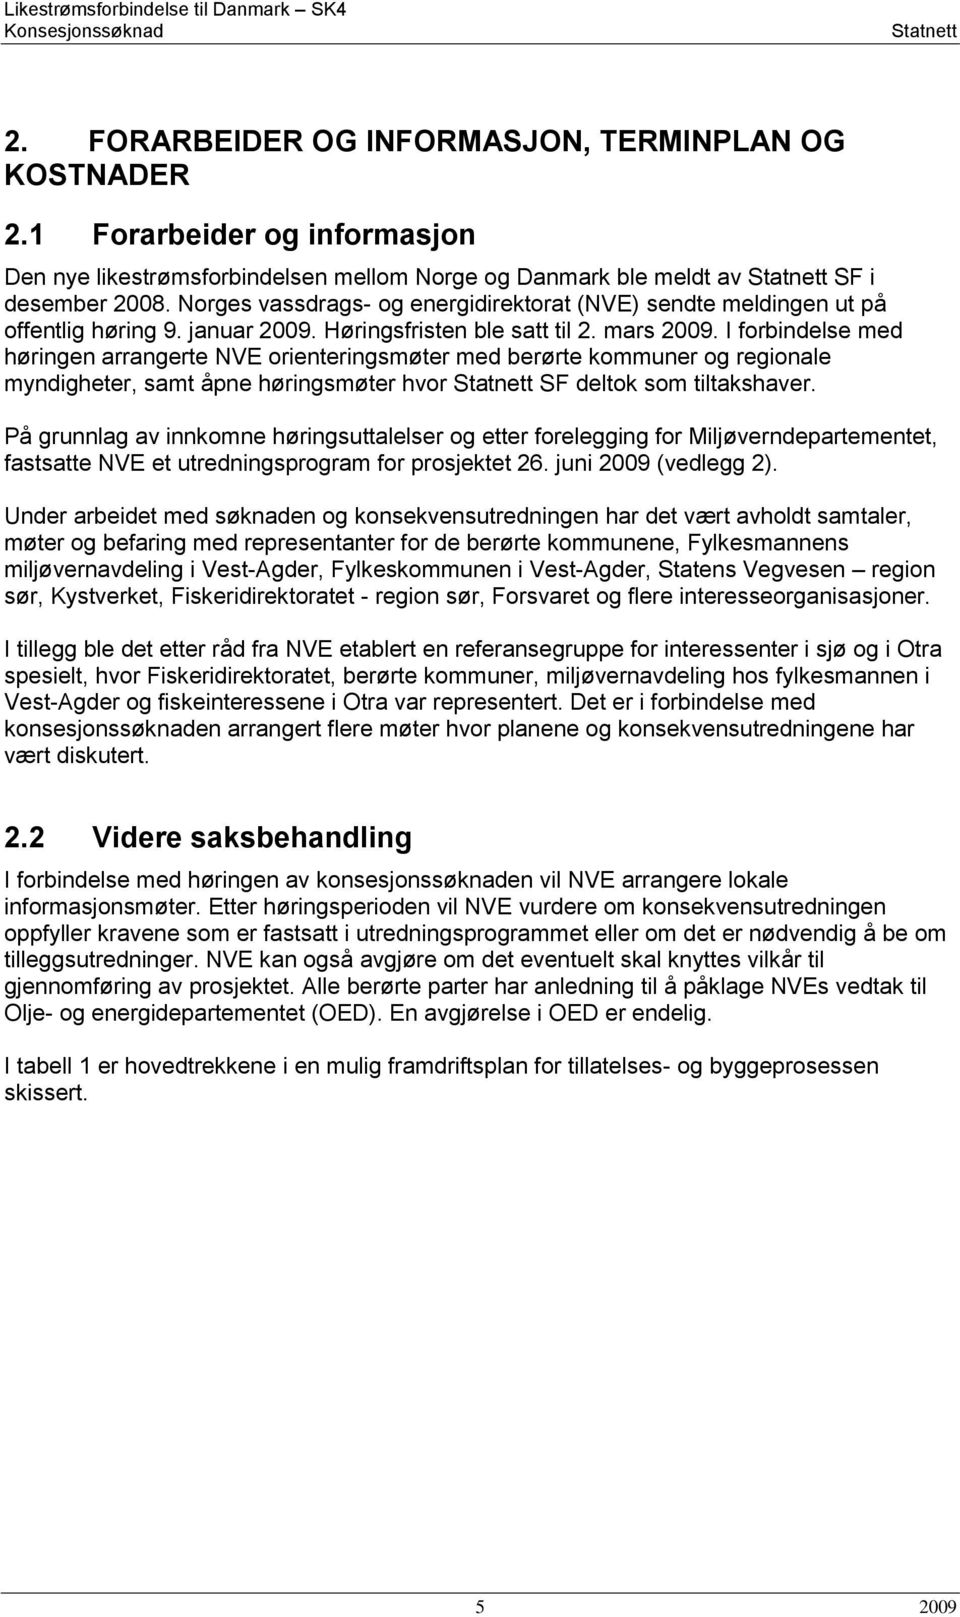 Norges vassdrags- og energidirektorat (NVE) sendte meldingen ut på offentlig høring 9. januar 2009. Høringsfristen ble satt til 2. mars 2009.